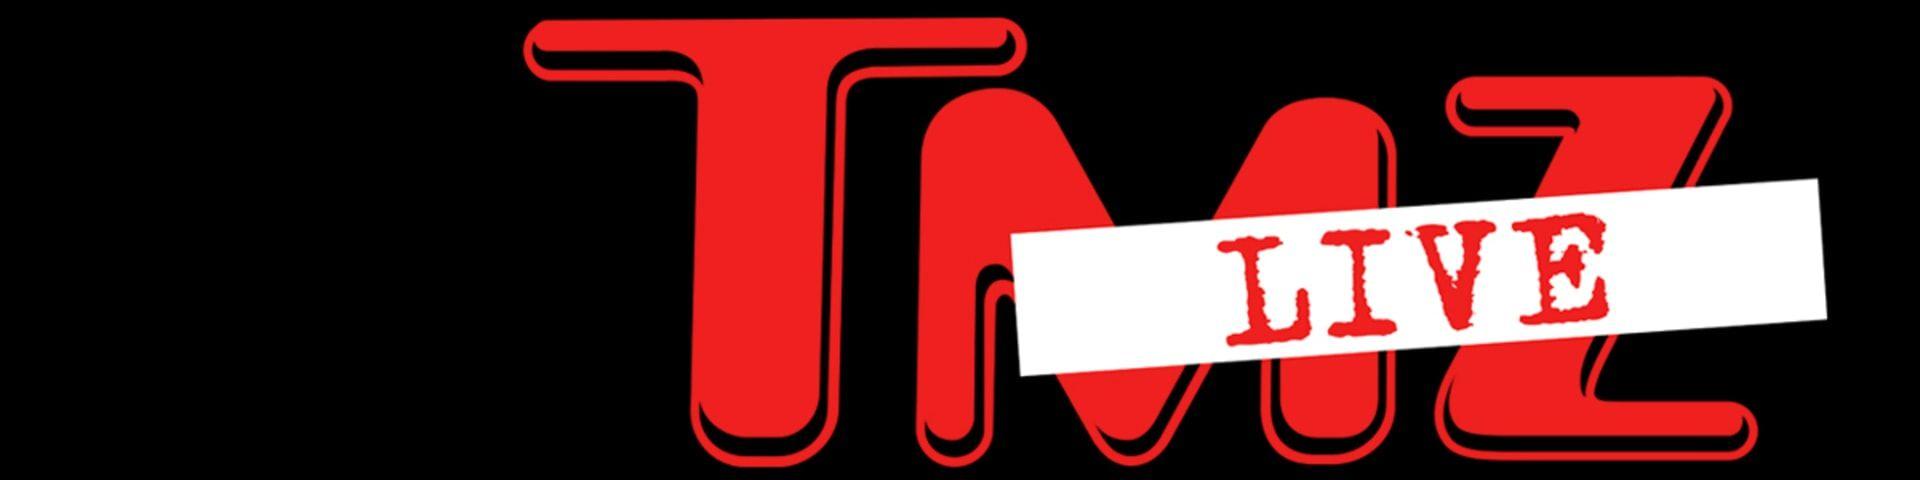 TMZ Logo - WarnerBros.com | TMZ Live | TV